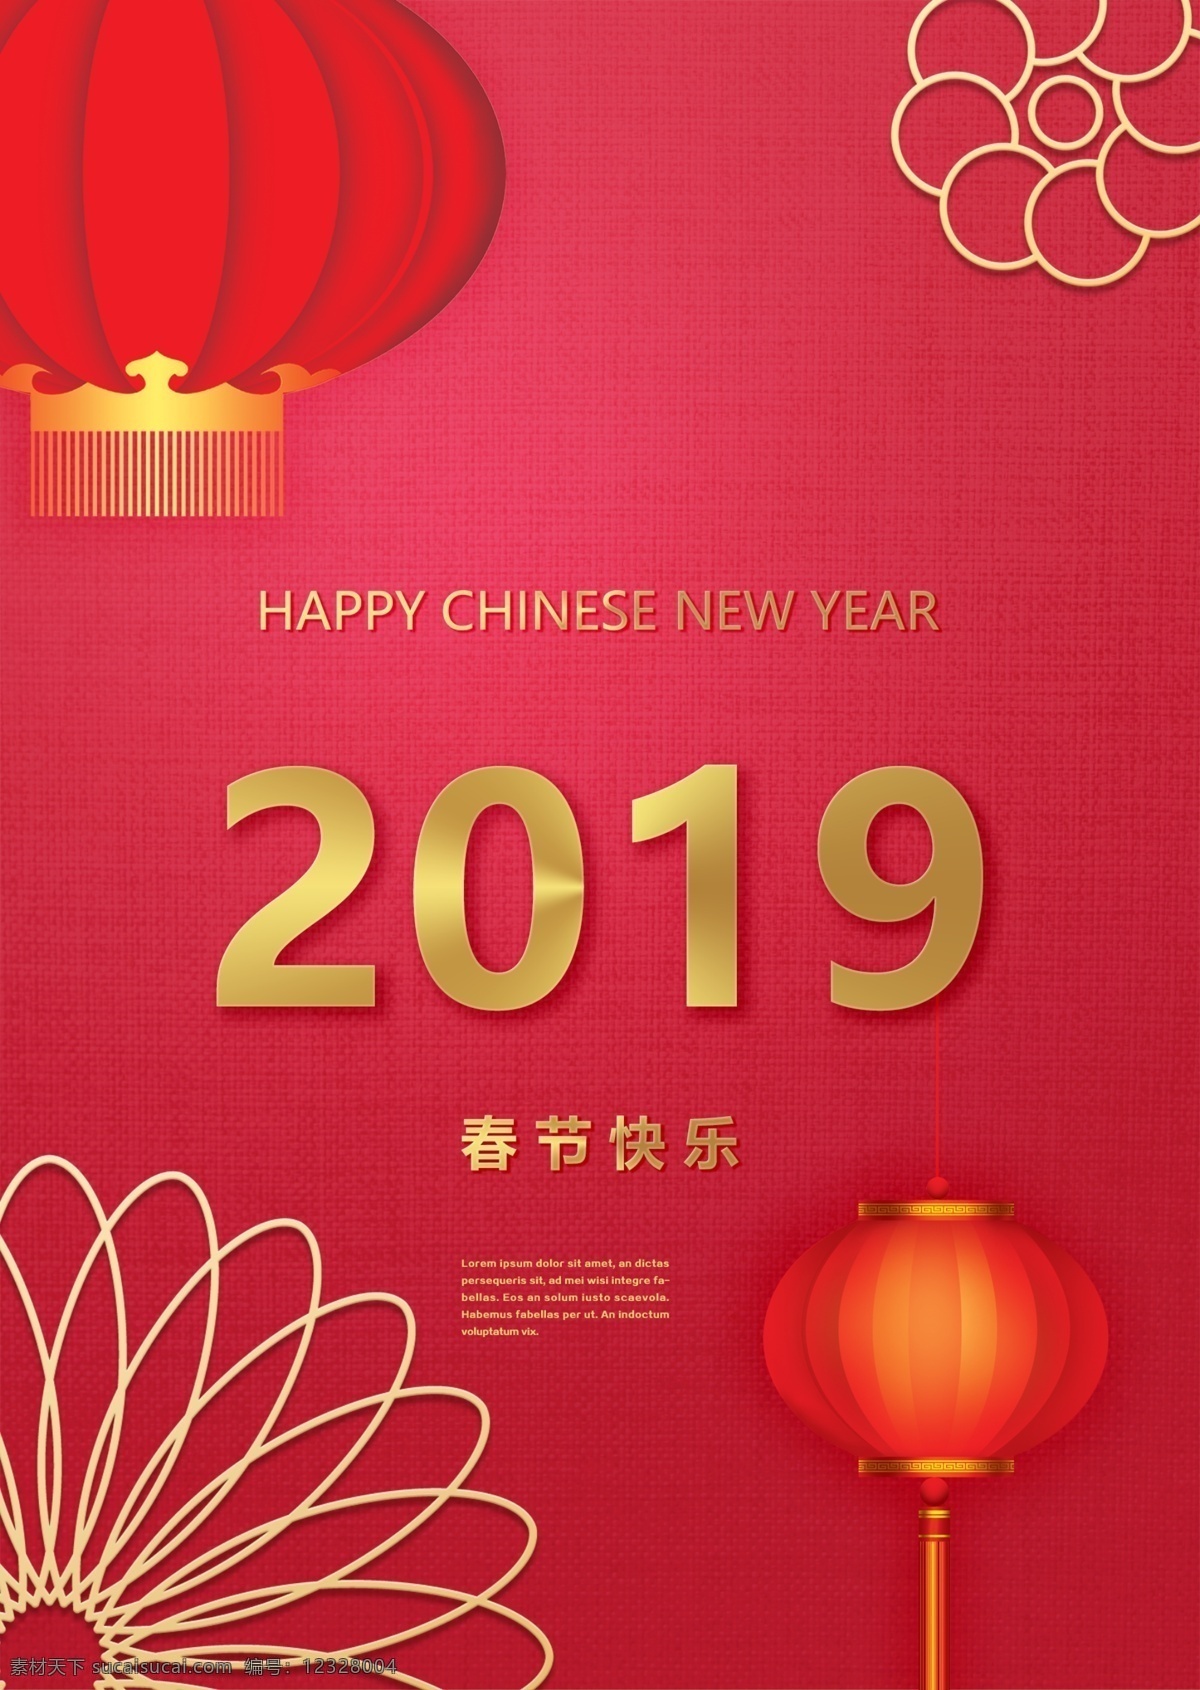 红色 传统 时尚 中国 新年 节日 海报 模板 二千一十九 中国新年 吉祥 财富和荣誉 春节 灯笼 立体金色图案 金色